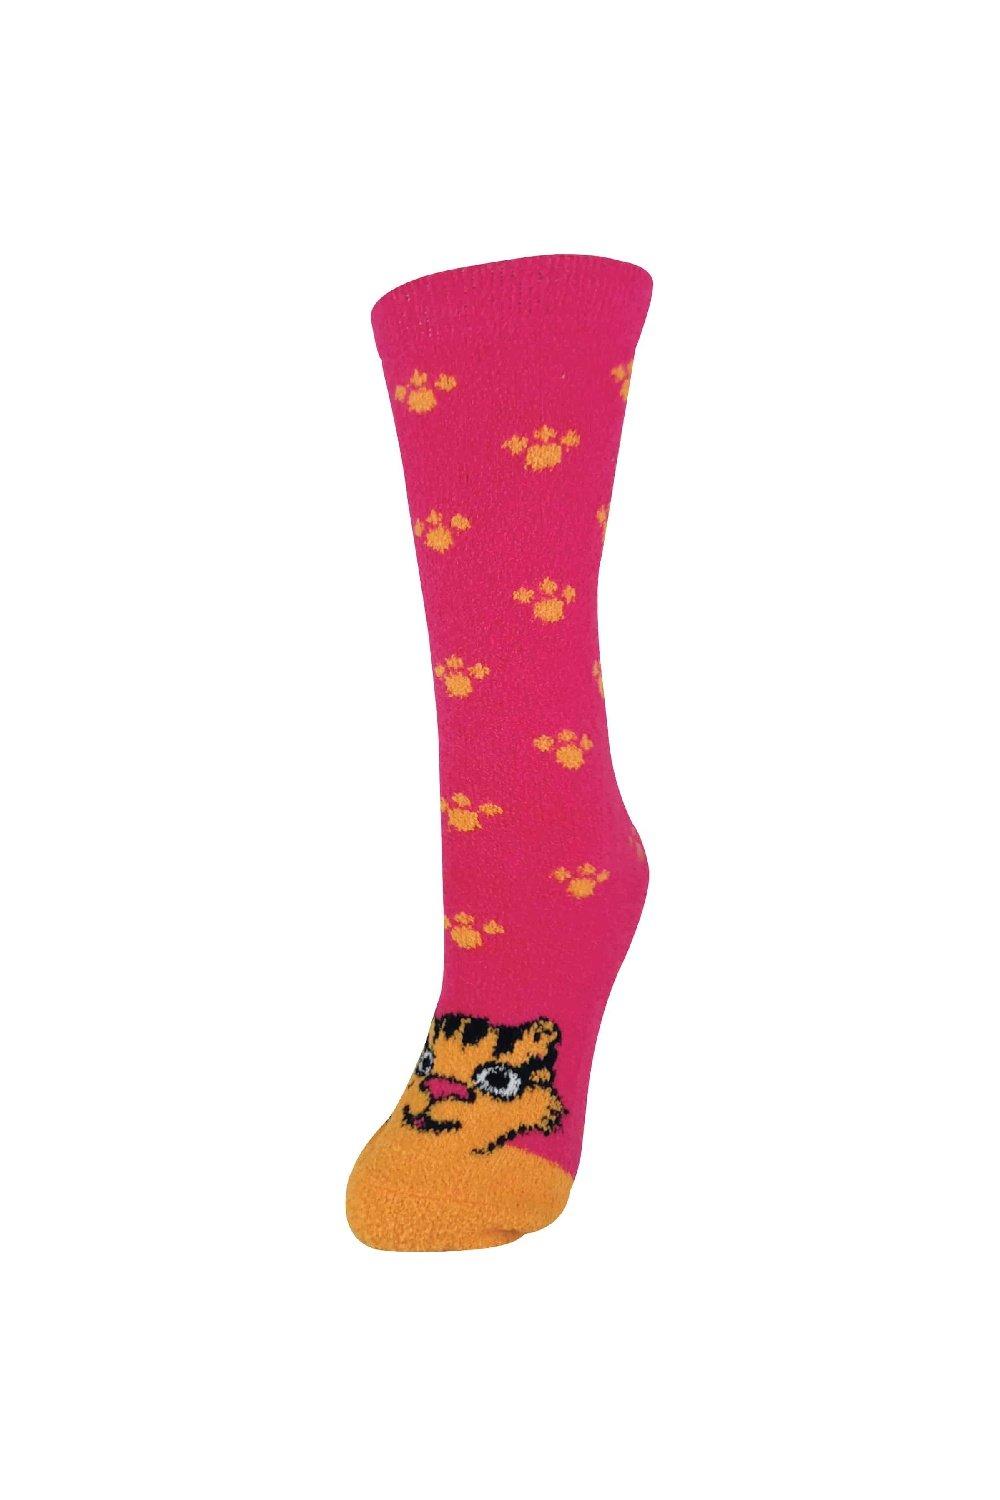 Soft Fluffy Non Slip Slipper Socks with Animal Designs